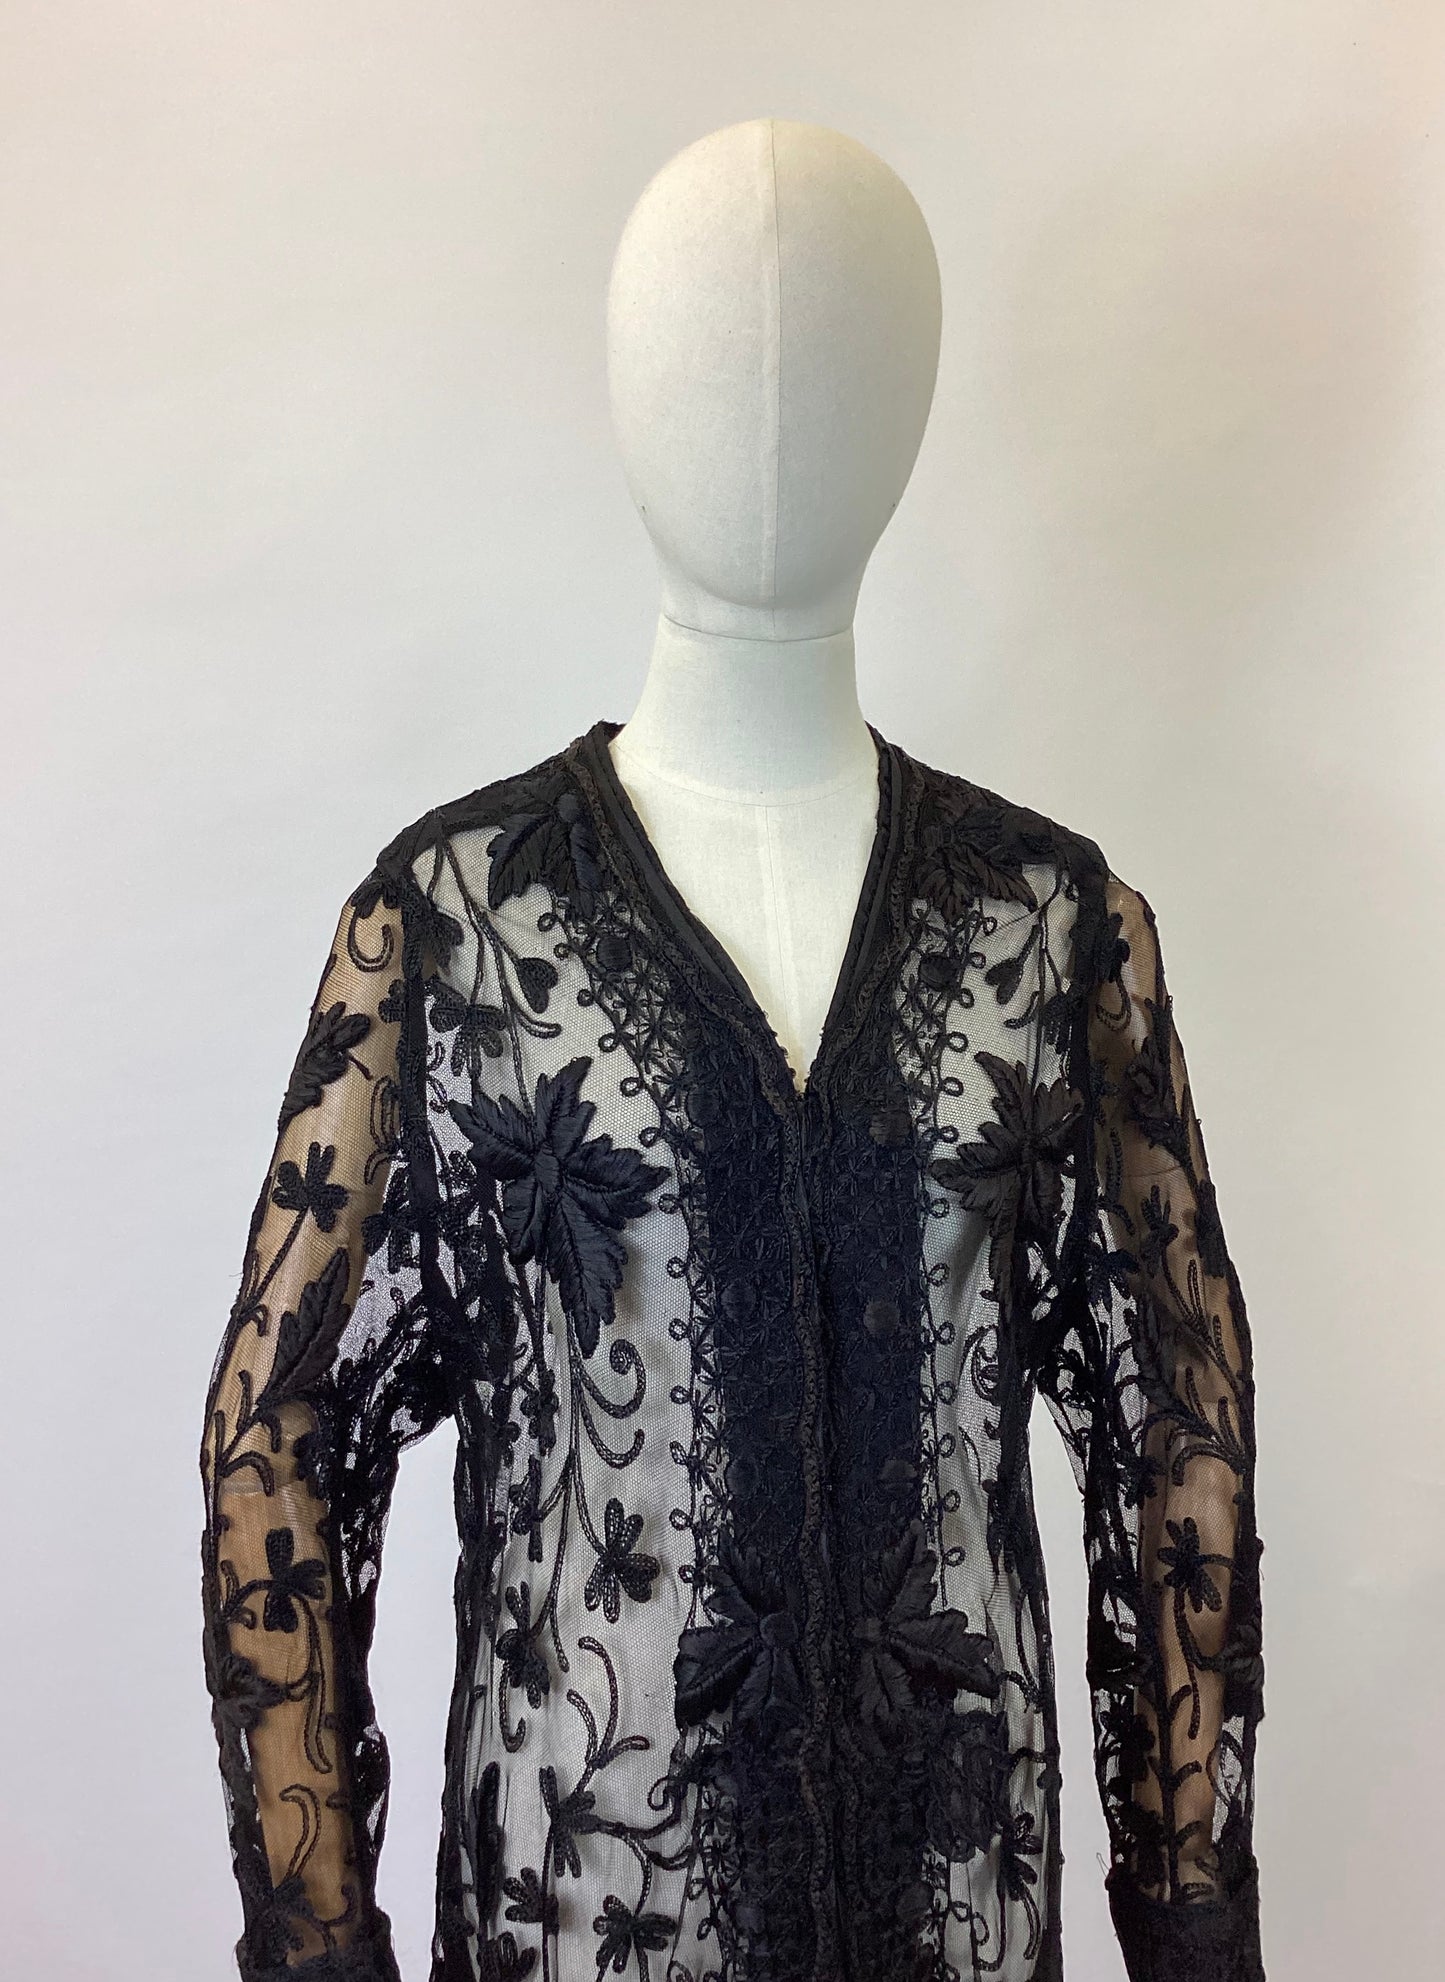 Original 1910’s Exquisite coat - Black Sheer Lace